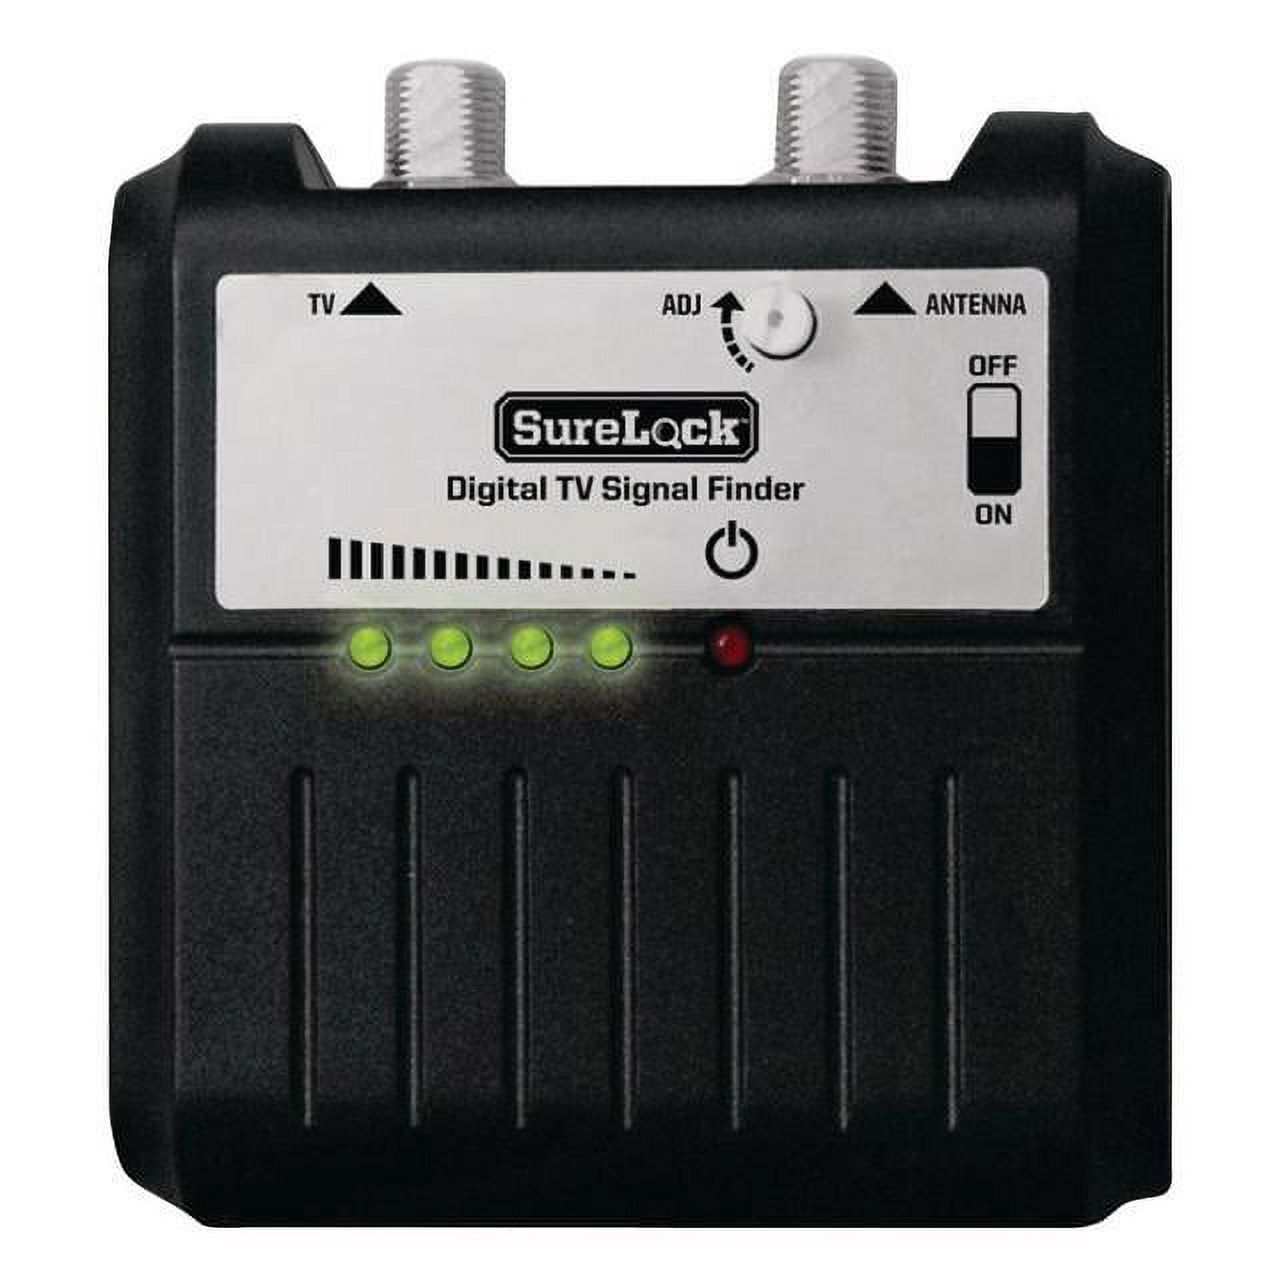 King SL1000 SureLock TV Antenna Signal Finder - image 1 of 2